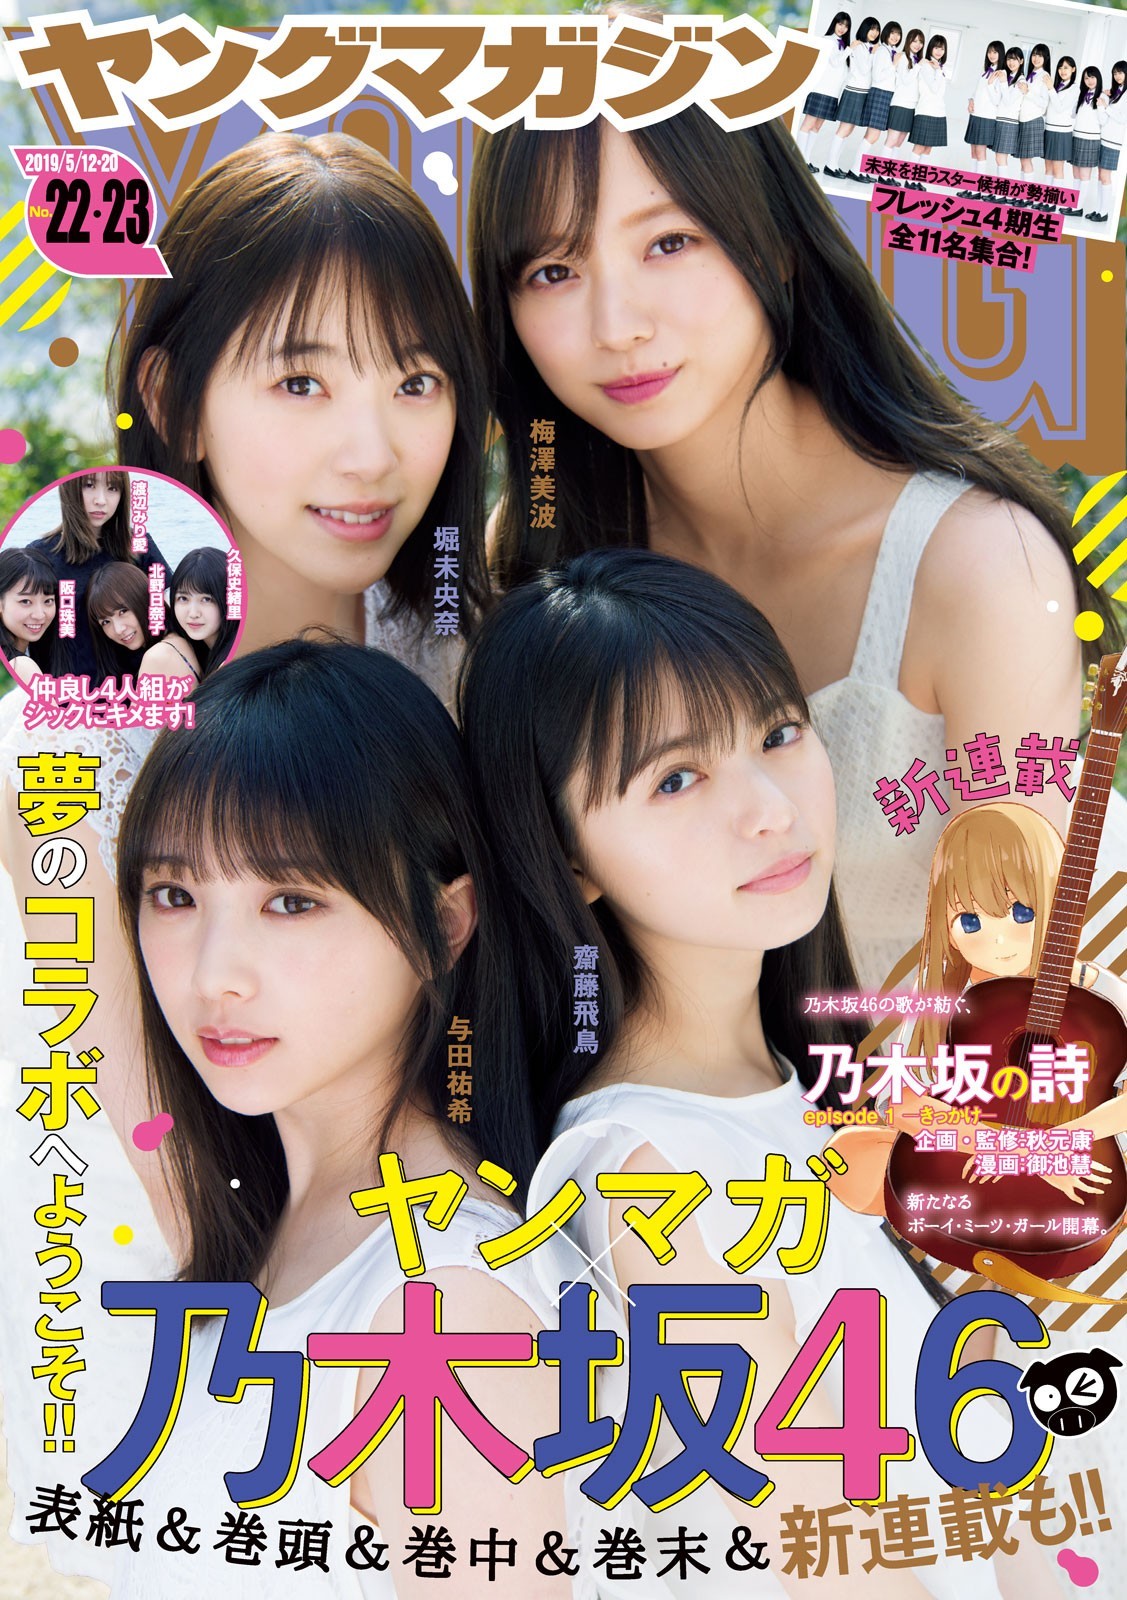 Nogizaka46, Young Magazine 2019 No.22-23 (ヤングマガジン 2019年22-23號) - 亞洲美女 -